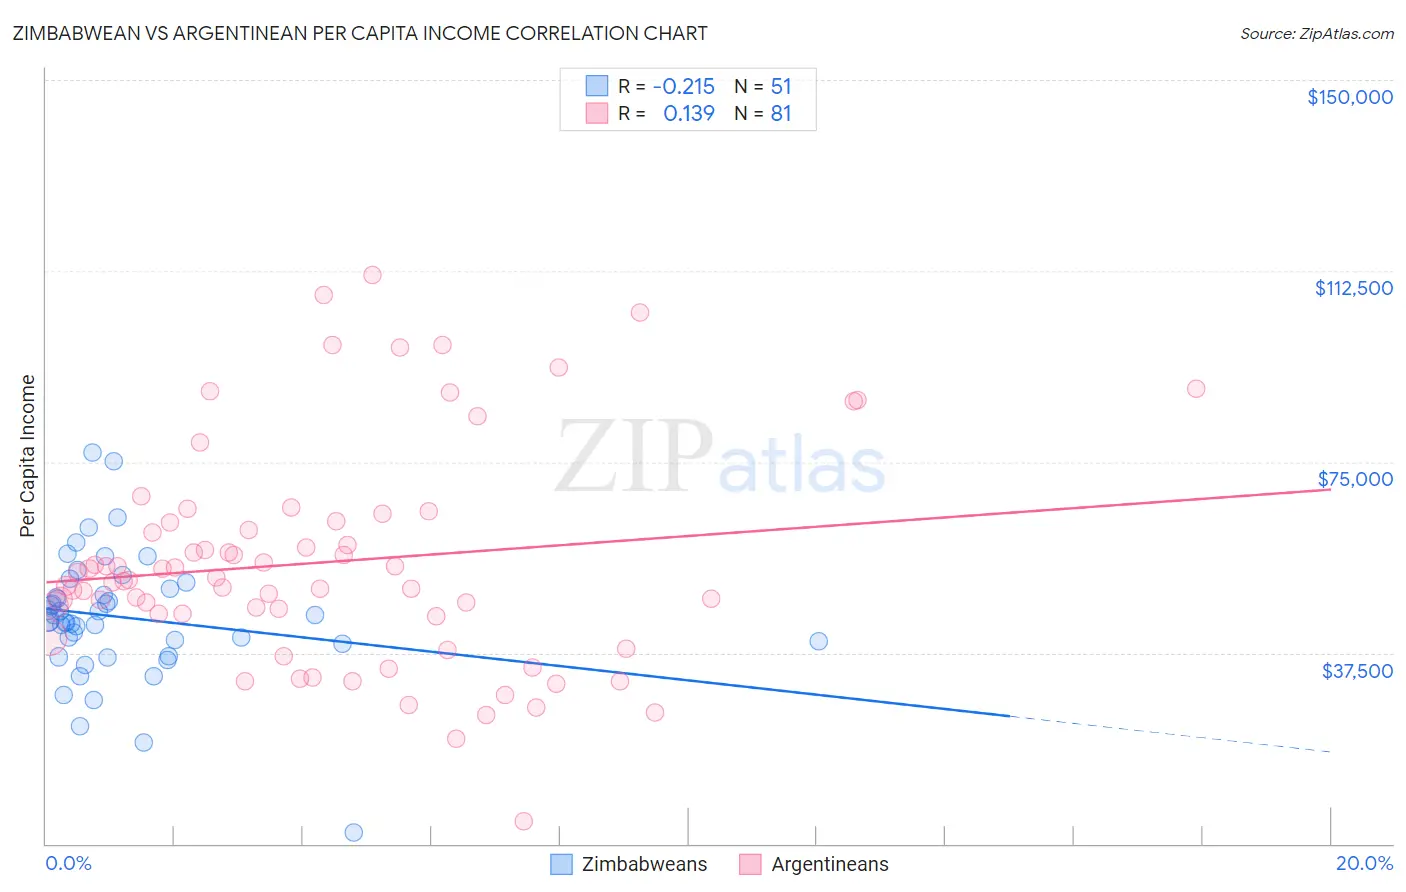 Zimbabwean vs Argentinean Per Capita Income